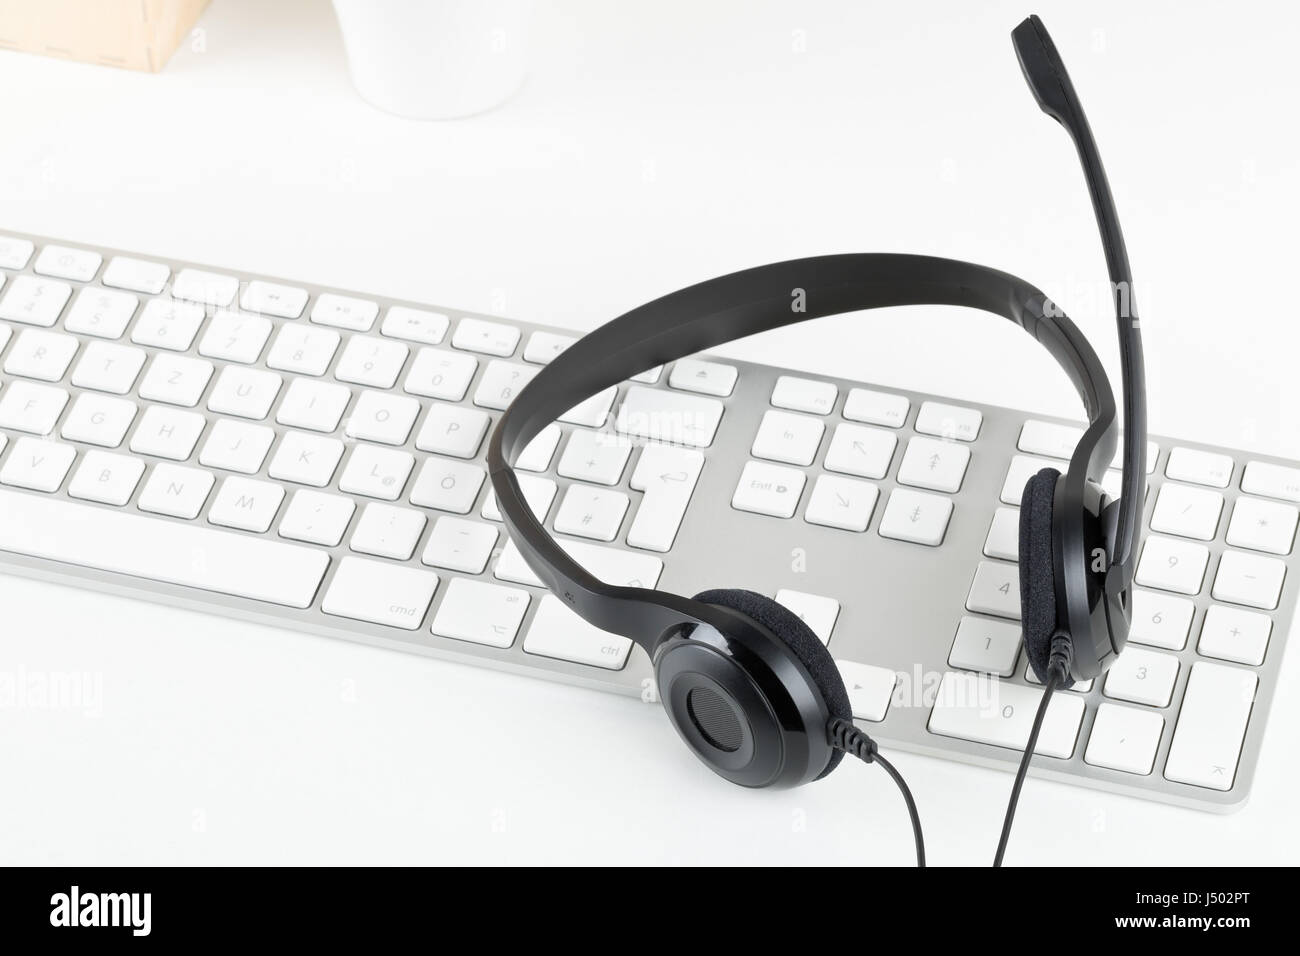 Equipo auricular con micrófono en el teclado del ordenador de mesa blanco - comunicación o helpcenter concepto Foto de stock